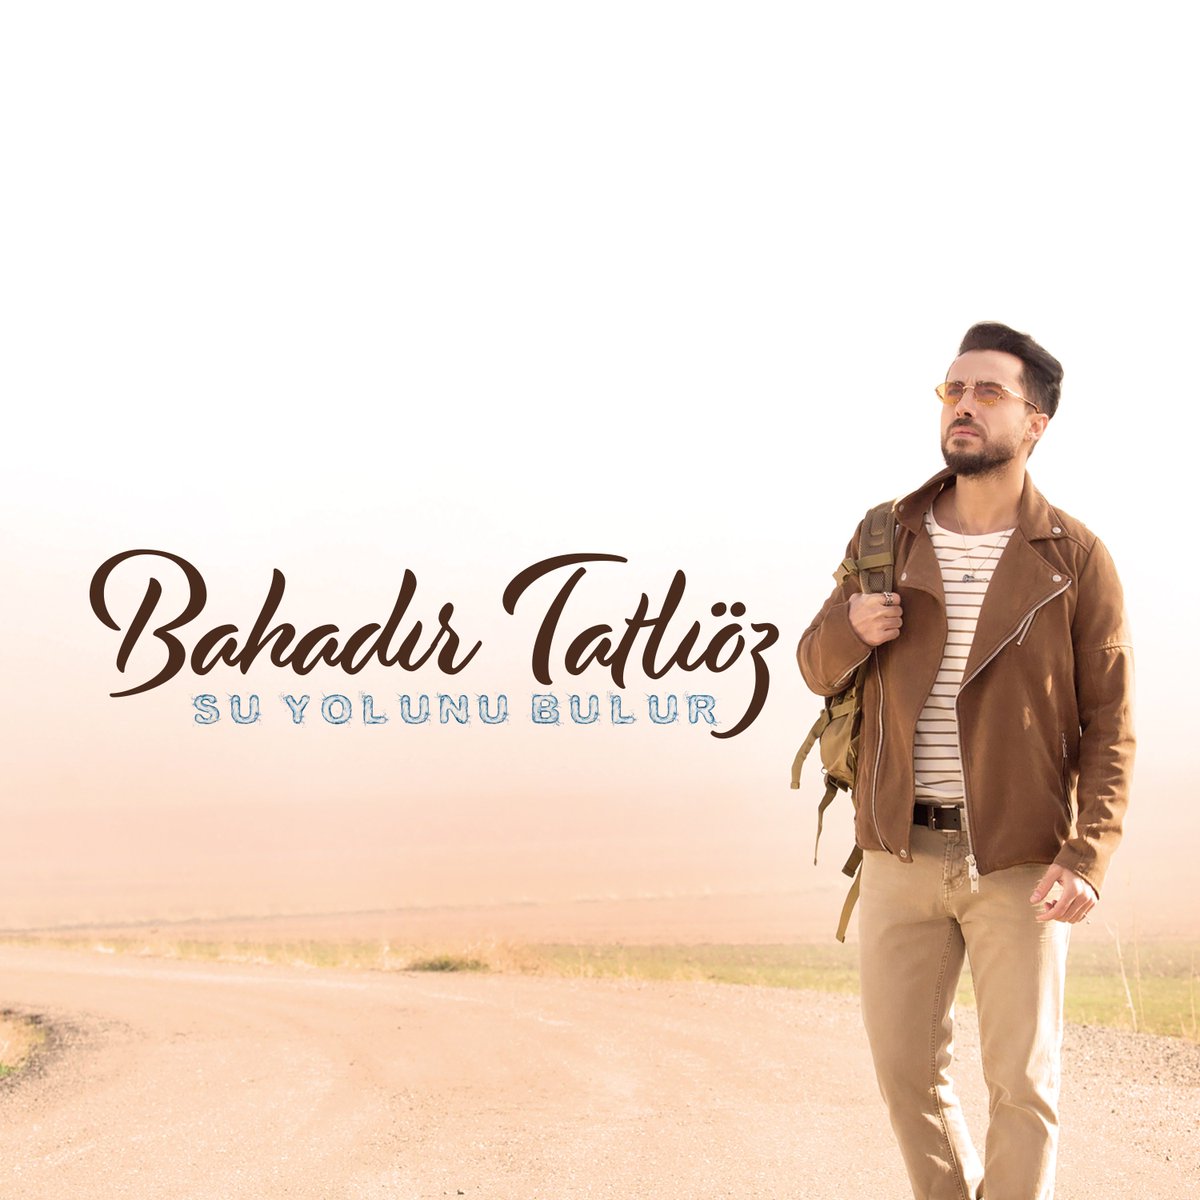 Yeniler gelmeye devam ediyor!!
@BahadirTatlioz #SuYolunuBulur albümünü dinleyenlerimizle buluşturuyor.
Gün boyunca 93.3 de ve radyoerkan.com da keyifle dinleyiniz.